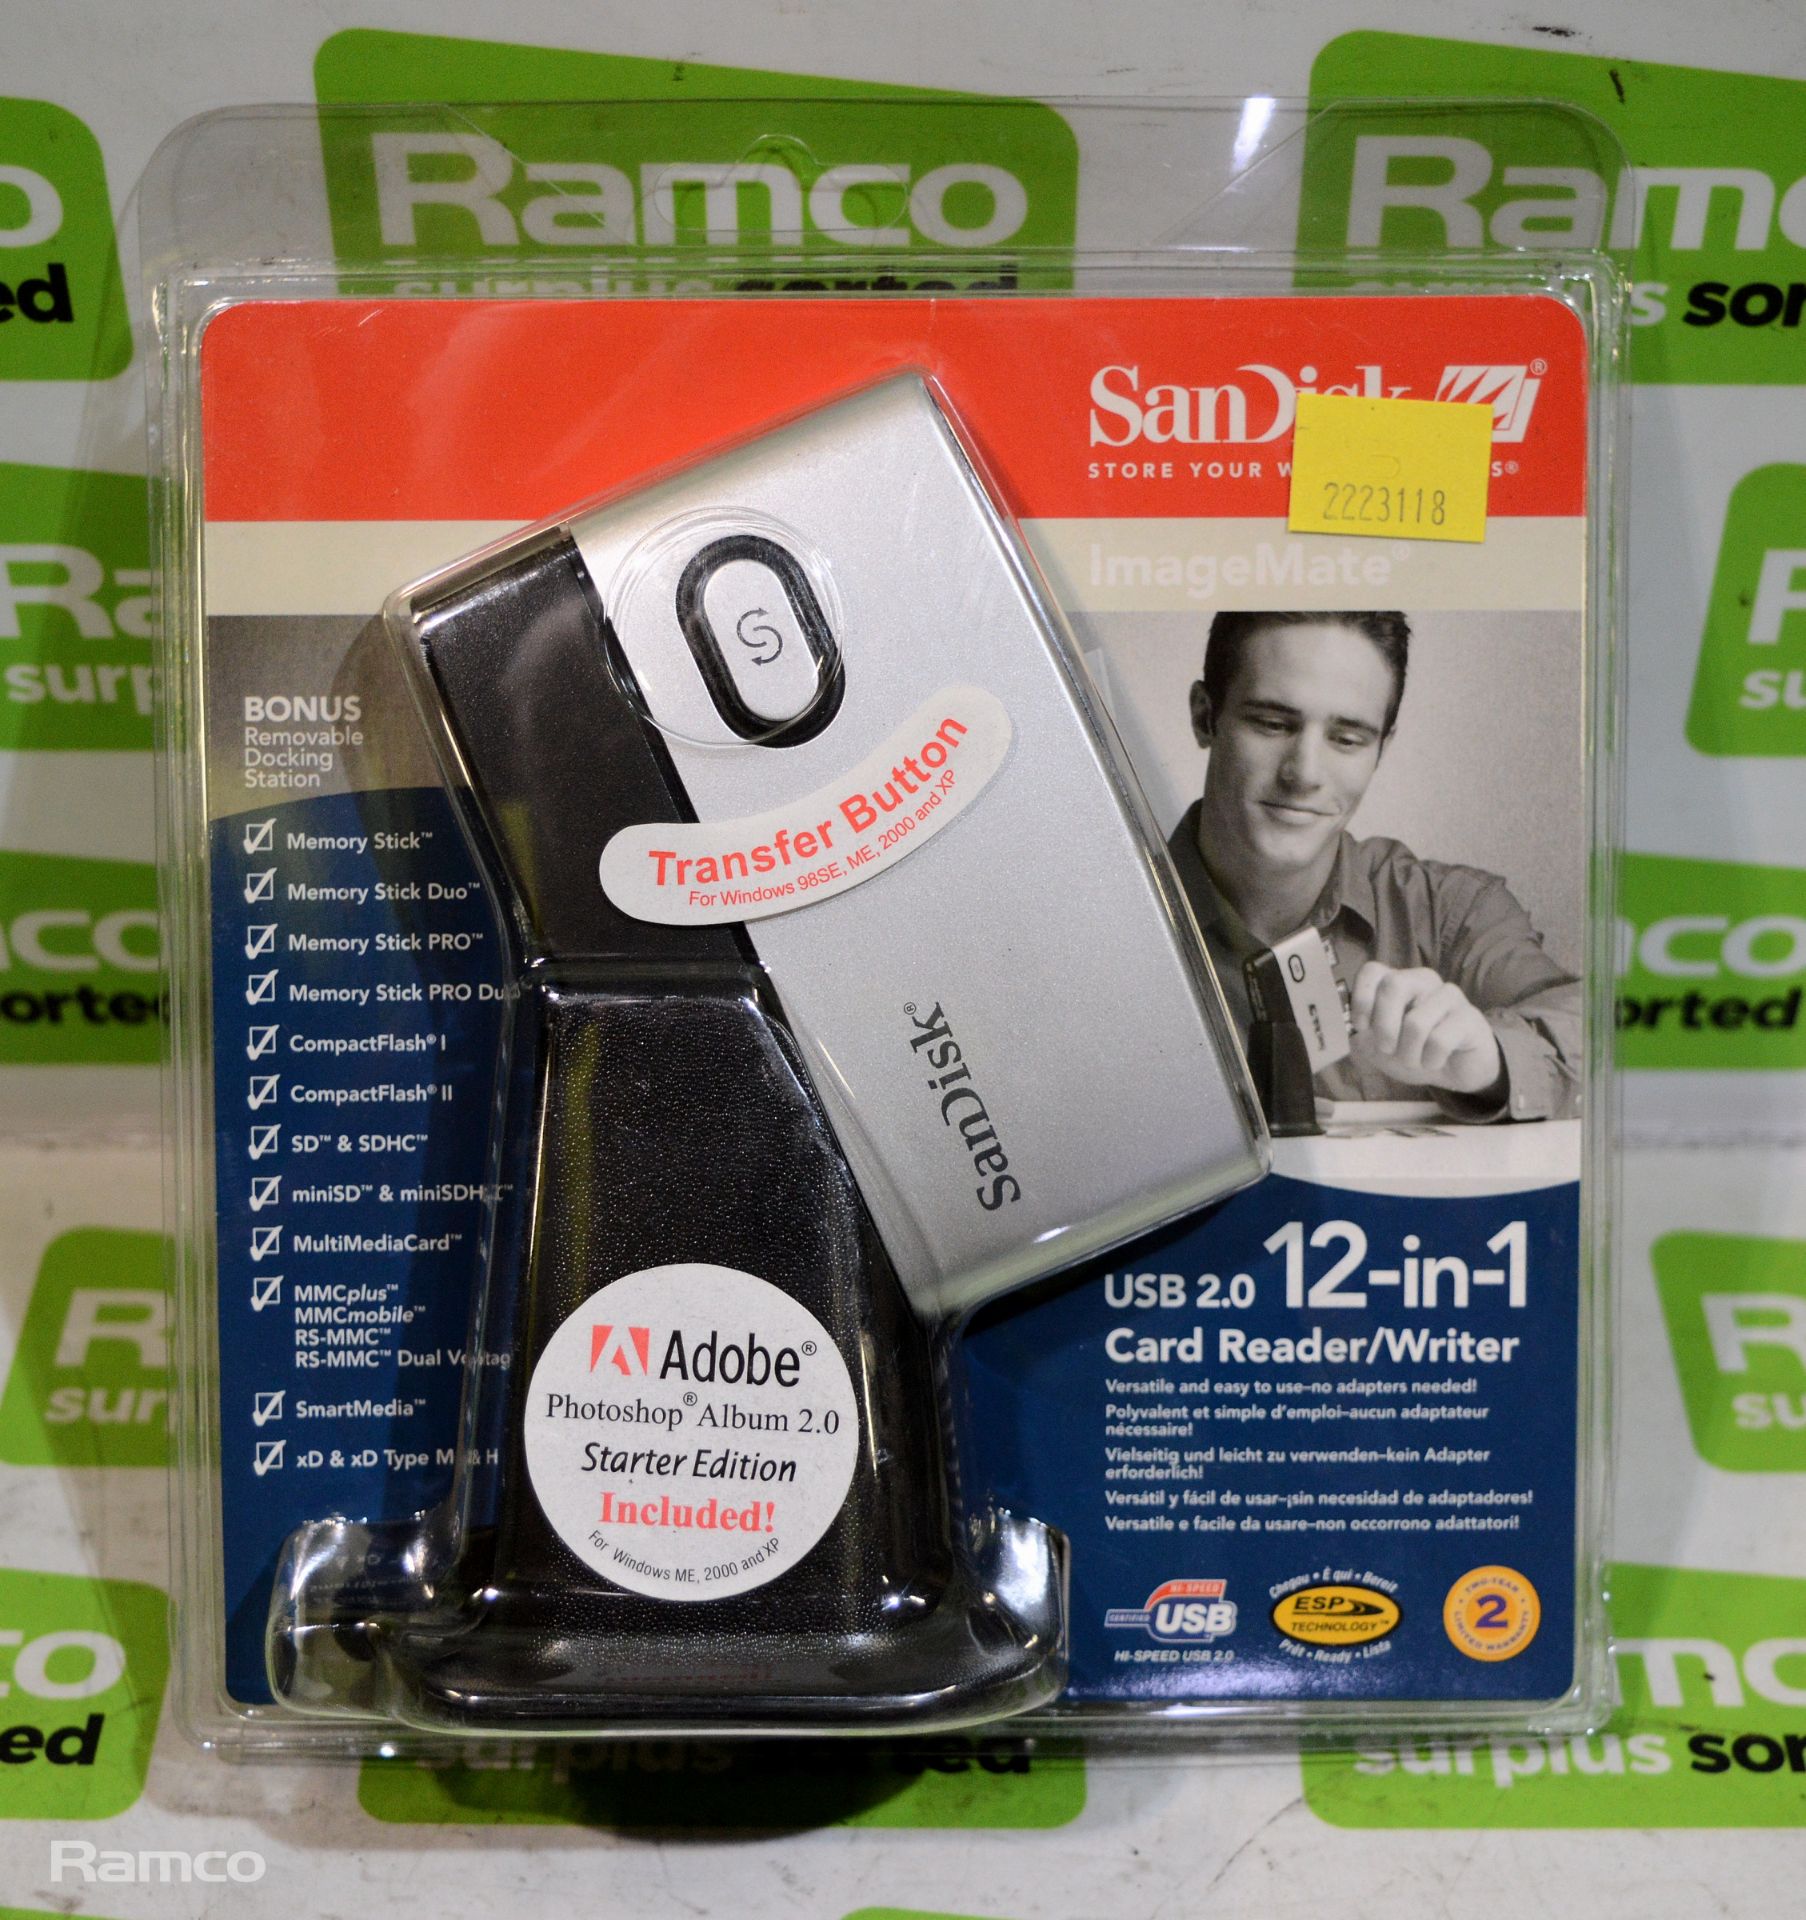 7x SanDisk ImageMate USB 2.0 12-in-1 Card Reader/Writers, 4x Garmin eTrex Automotive Adjustable - Bild 4 aus 5